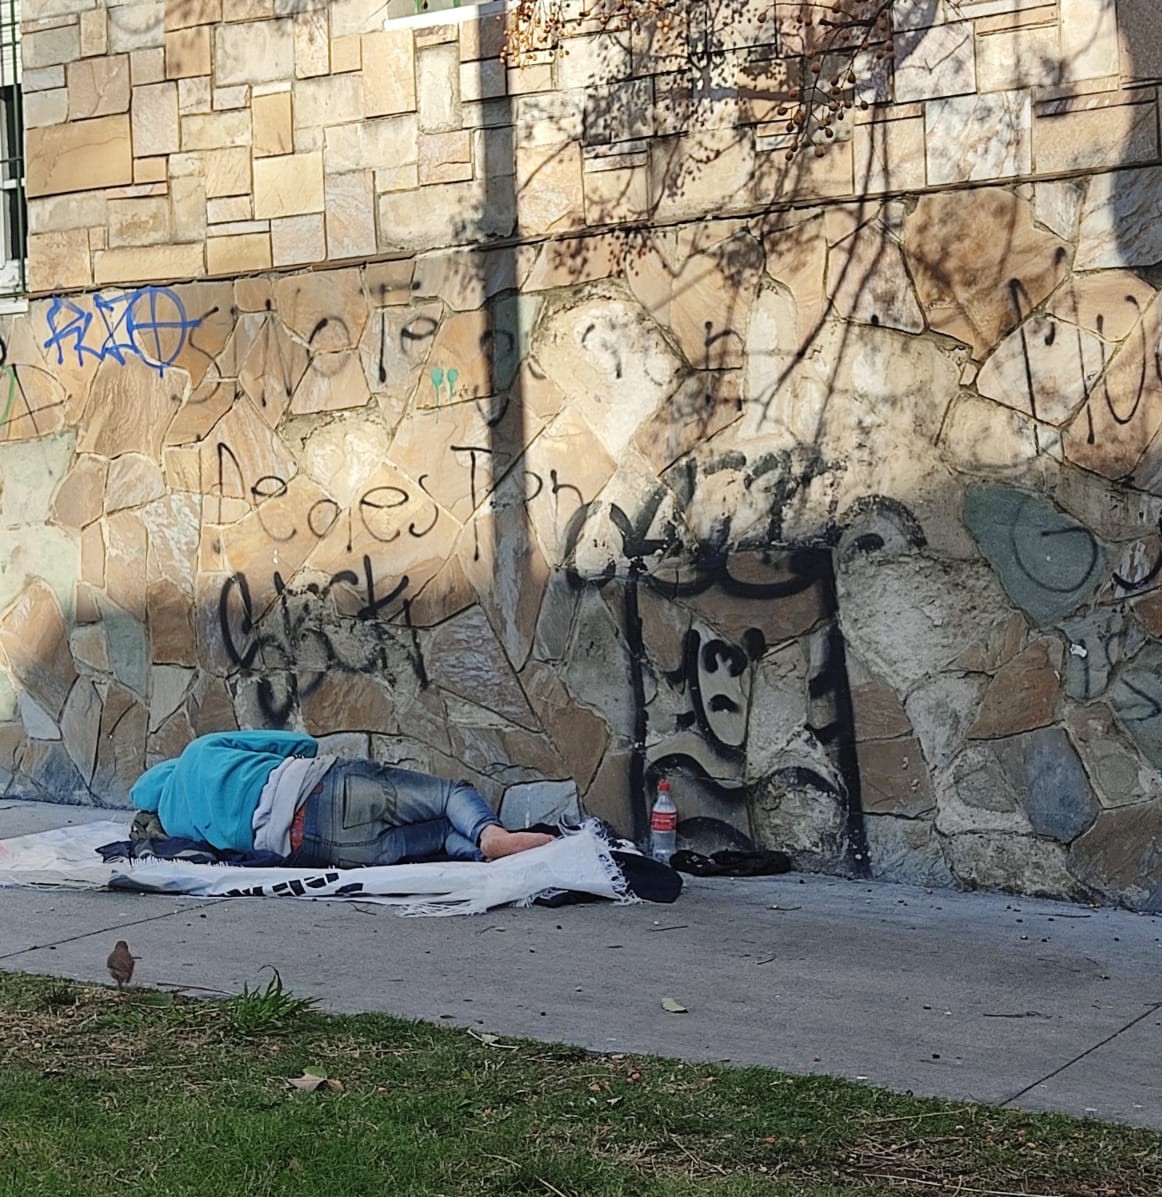 Uno de tantos hermanos que duermen cotidianamente en la calle en Montevideo, Uruguay. (Foto: cortesía Carla Lima)